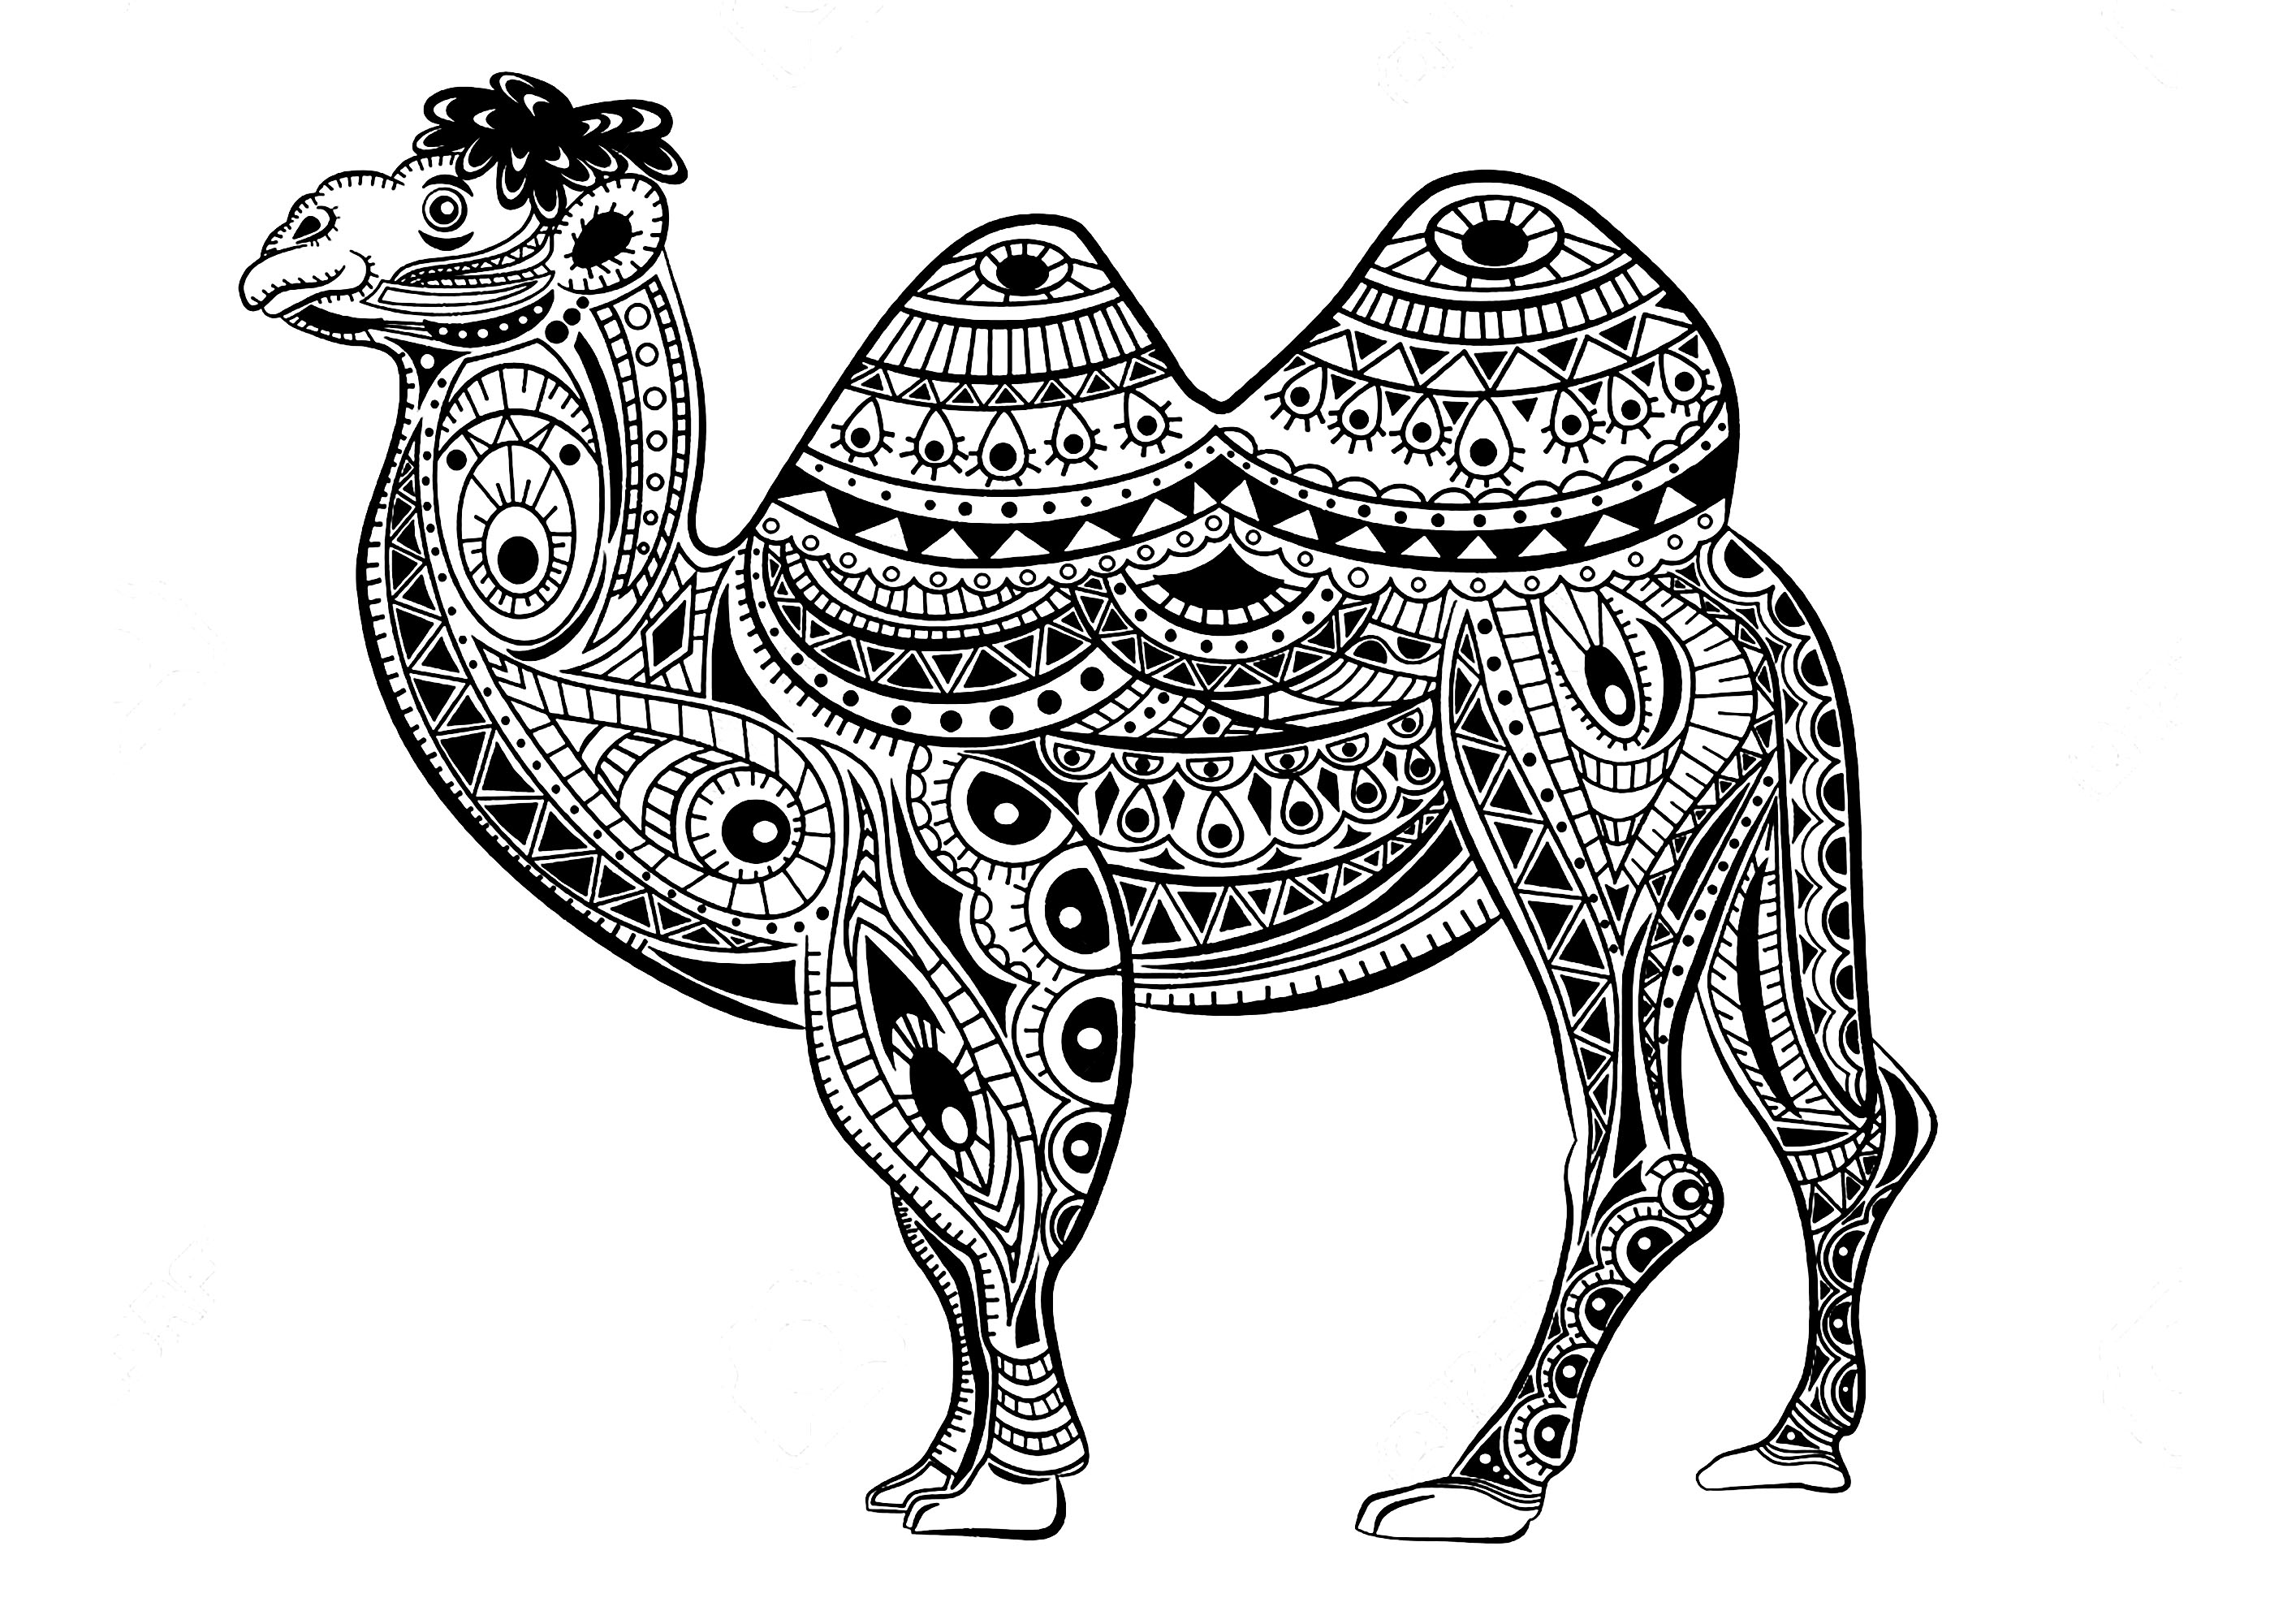 Bonito camello cuyo cuerpo está hecho de patrones Zentangle, Artista : Vita Kosova   Origen : 123rf